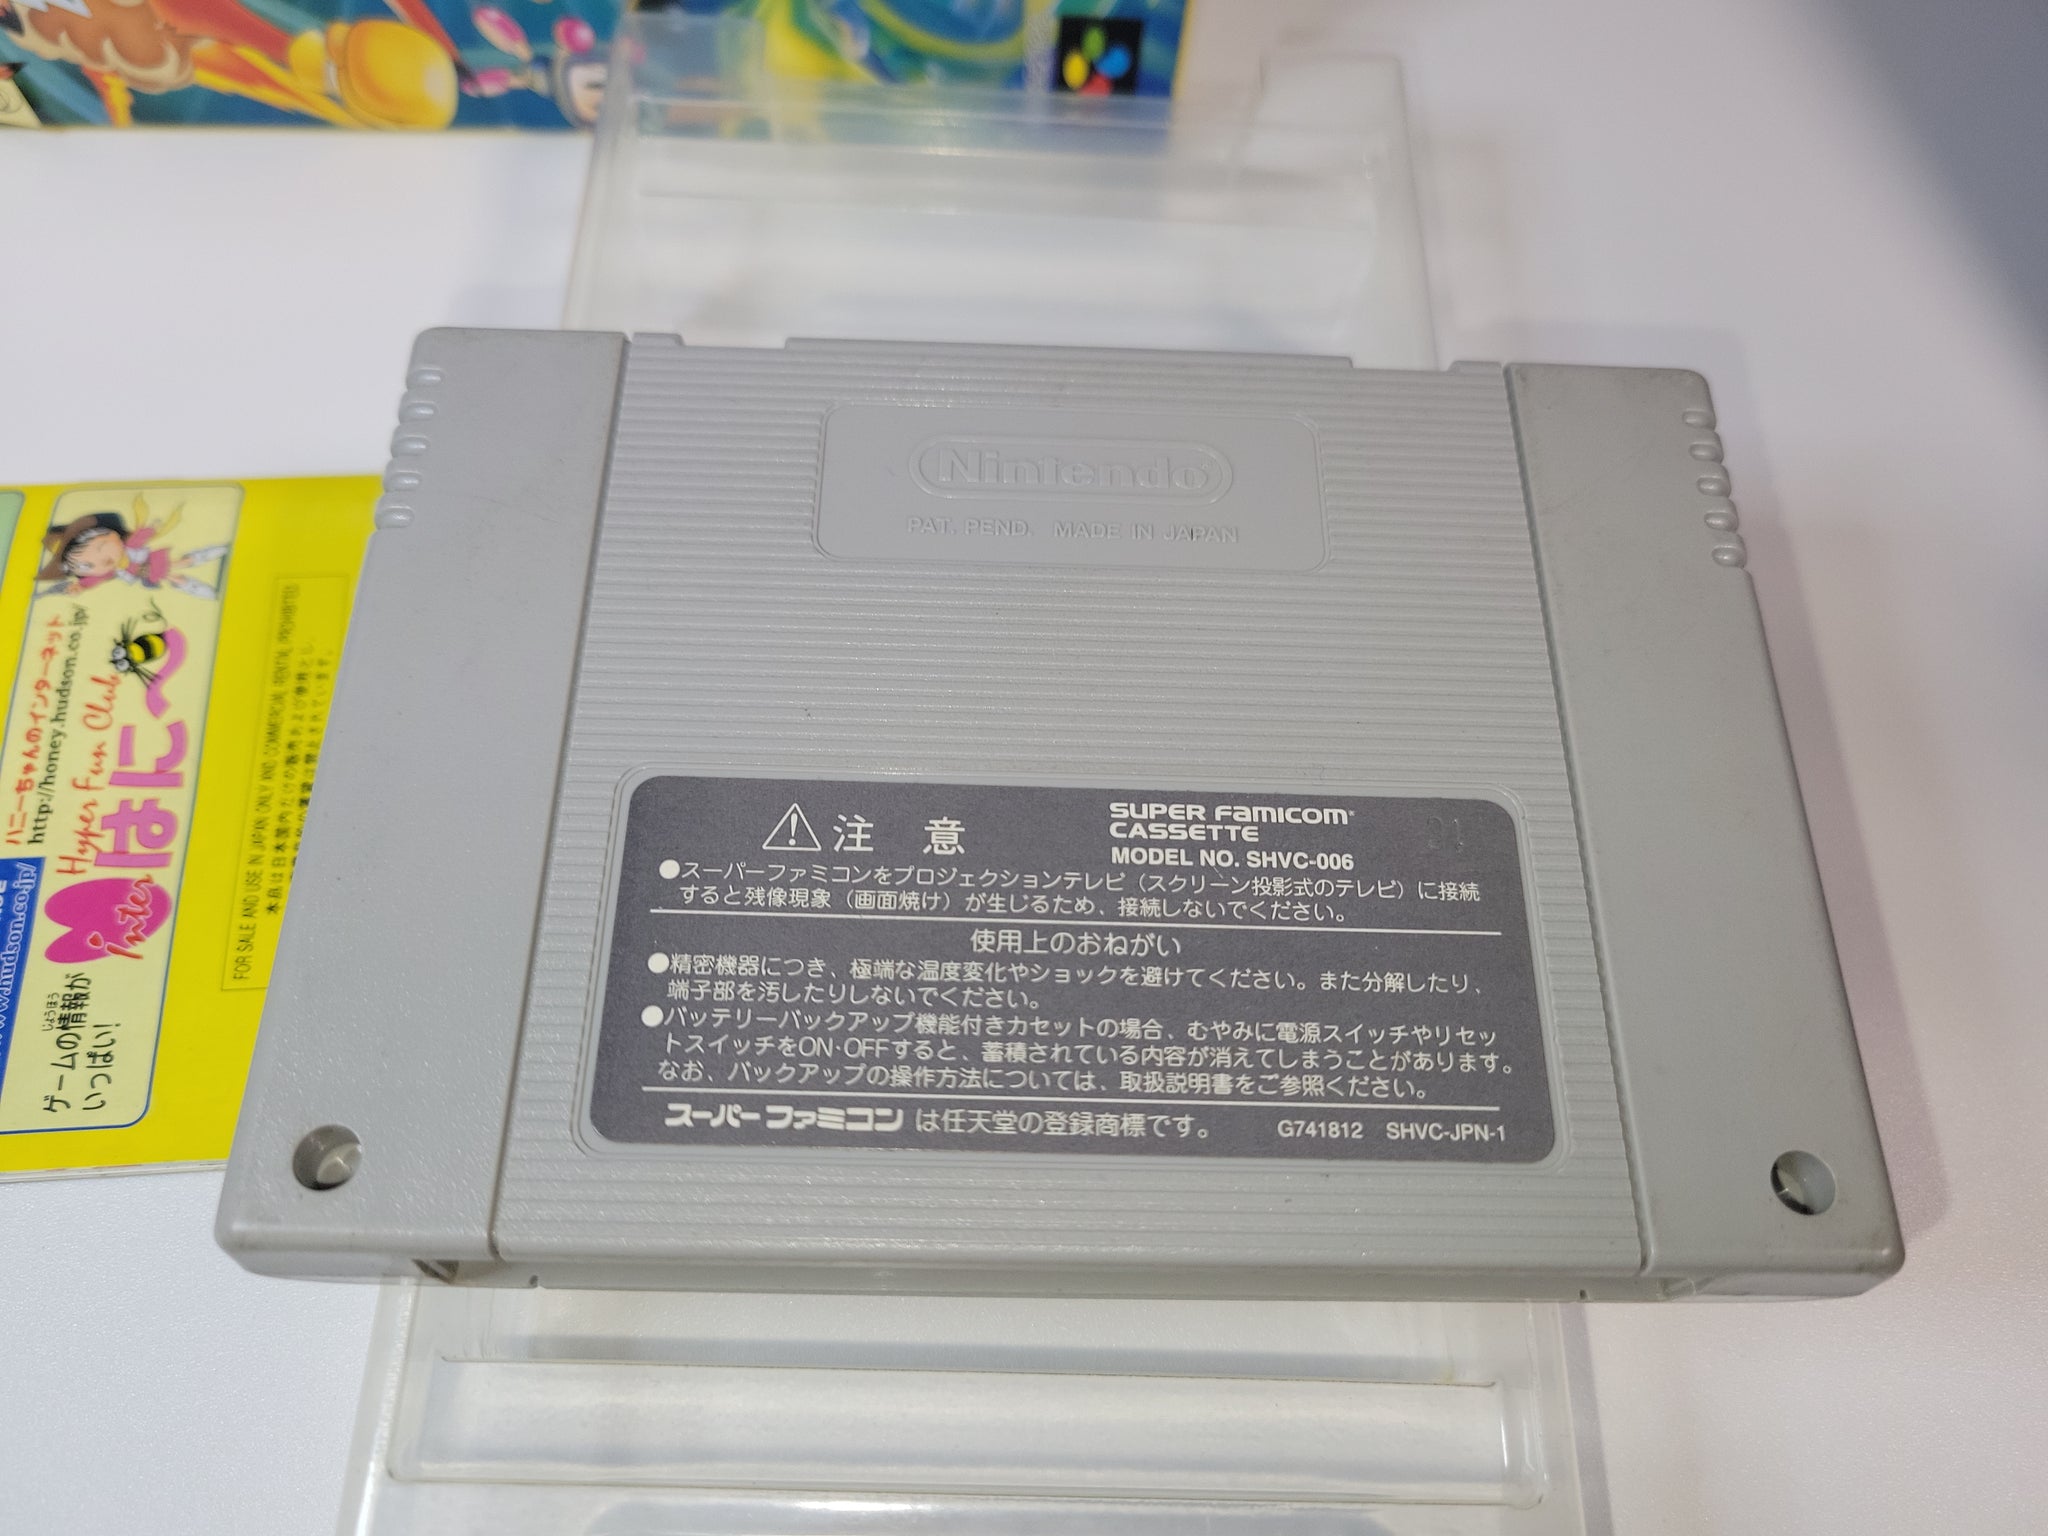 Super Bomberman 5 - Nintendo Sfc Super Famicom – The Emporium